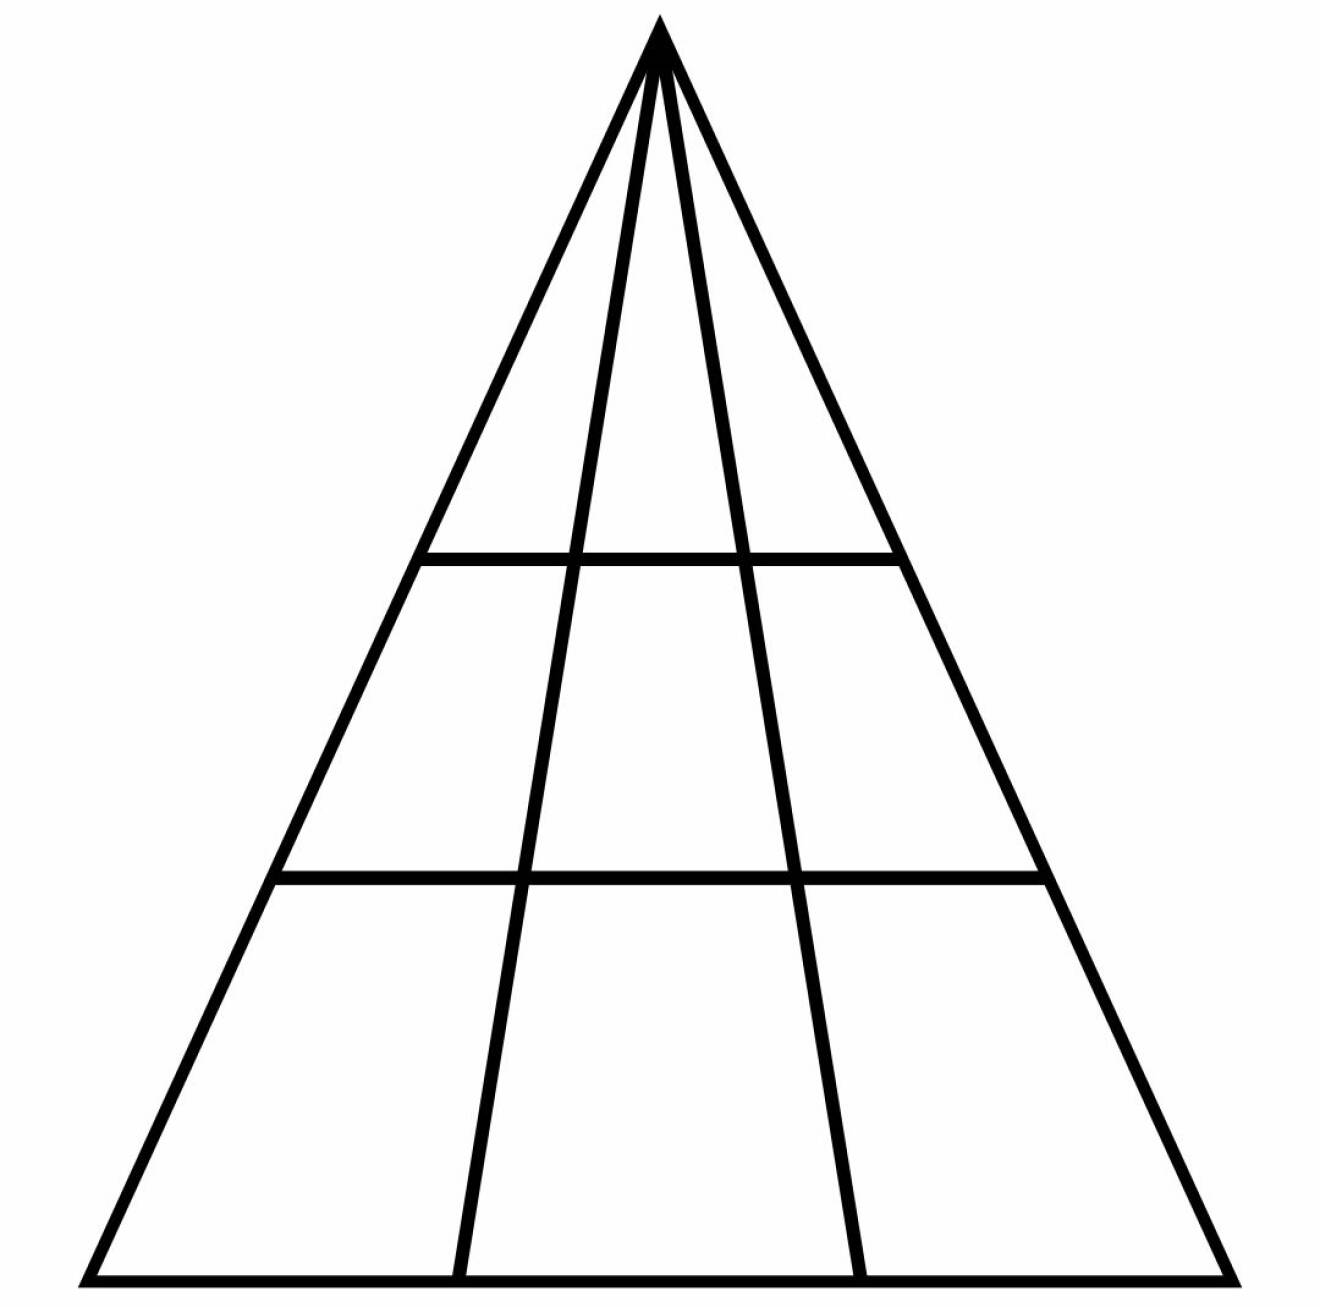 En triangel som är uppdelad i flera små trianglar.